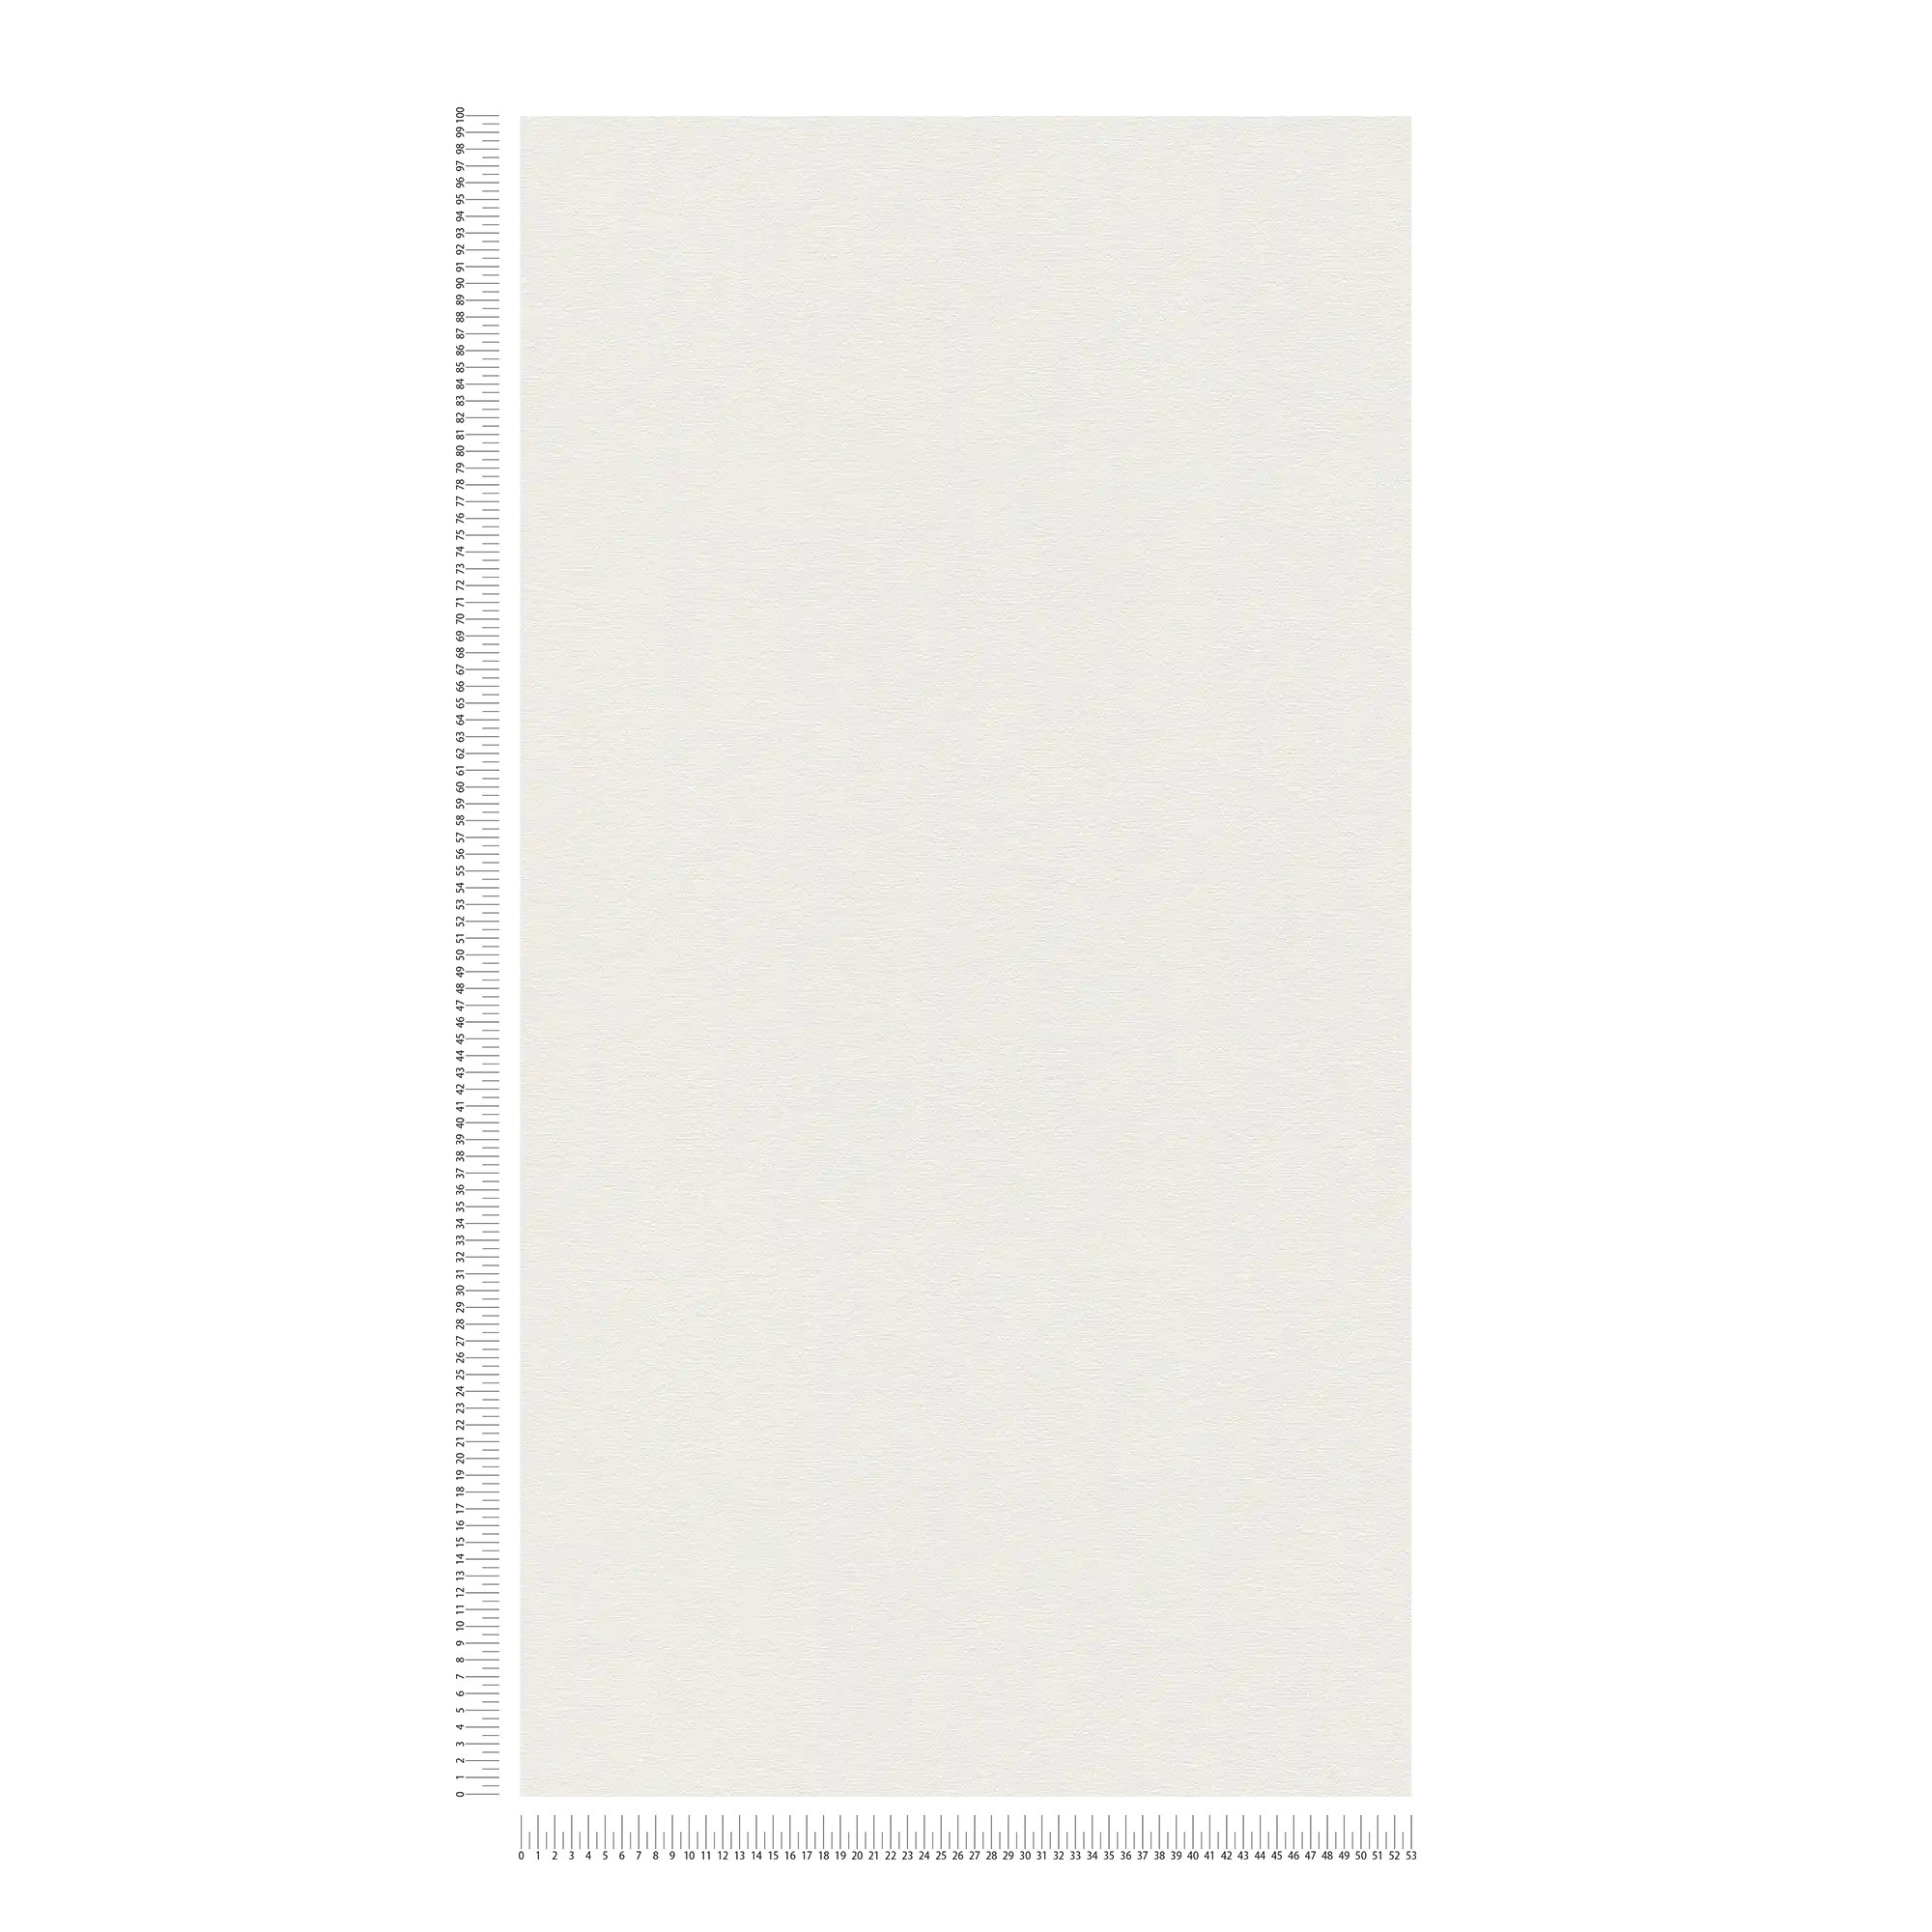             papier peint en papier uni légèrement structuré aspect mat - blanc, crème
        